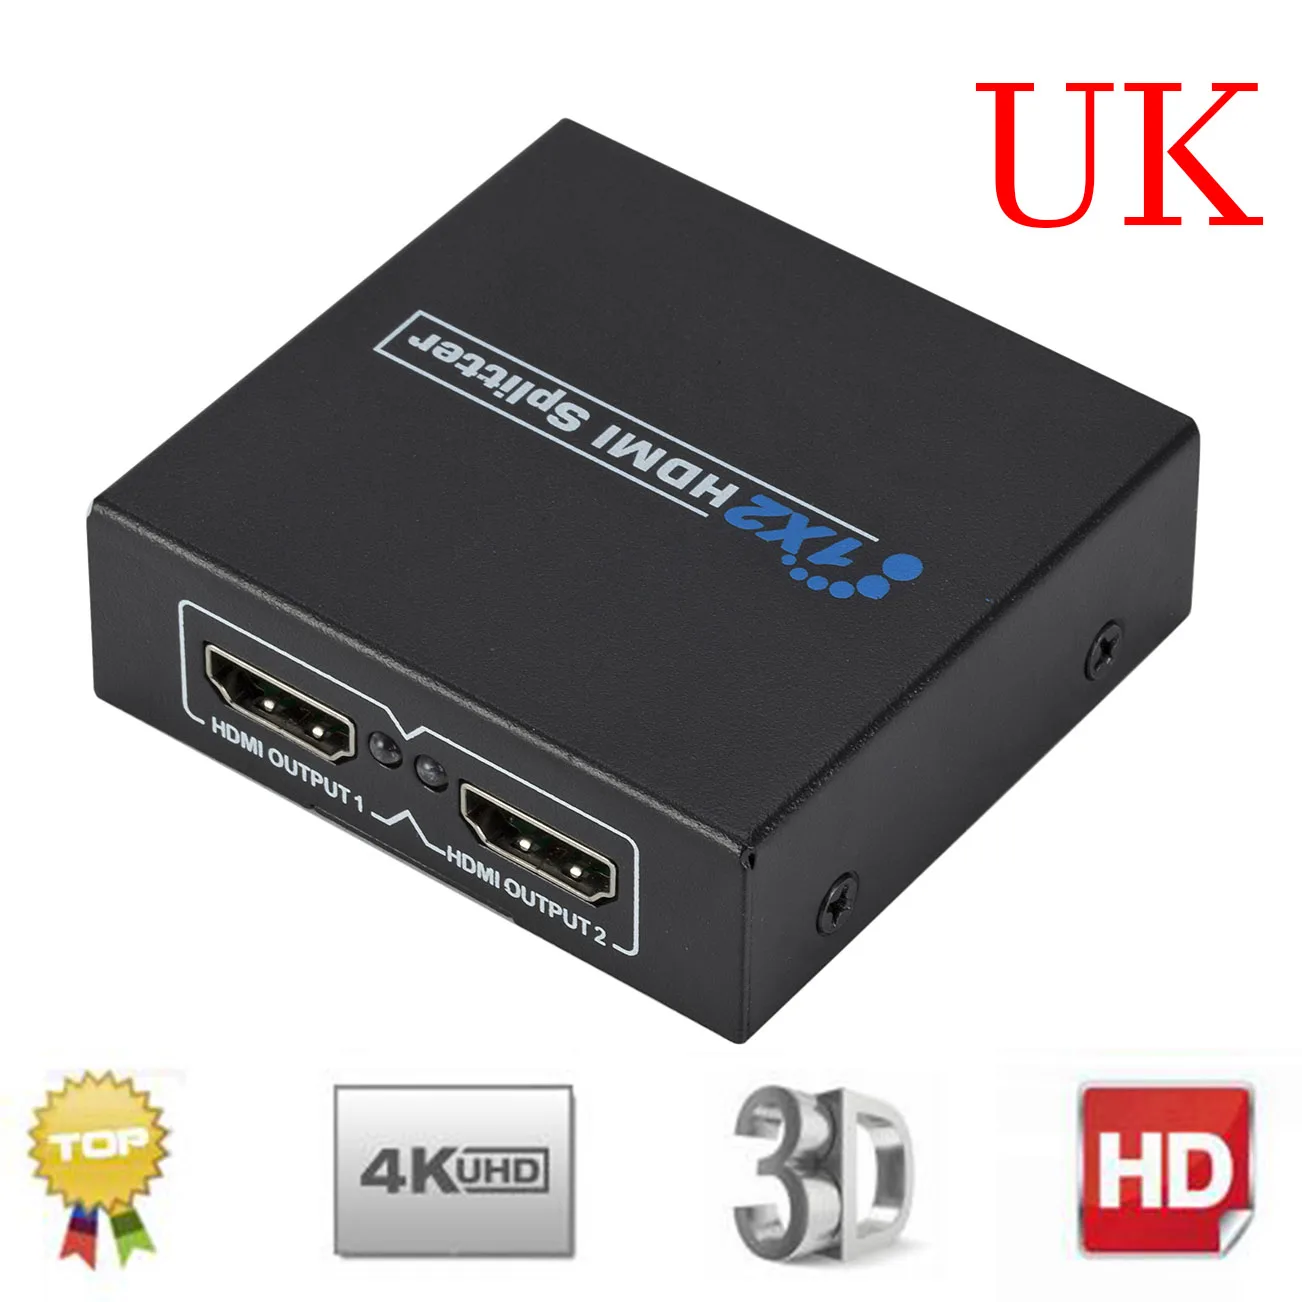 HDMI 4 K Splitter Full HD видео с разрешением 1080 p HDMI коммутатора коммутатор коробка концентратор 1 в 2 из двойной усилитель дисплея для HDTV DVD Xbox PS3/4/5 - Цвет: UK